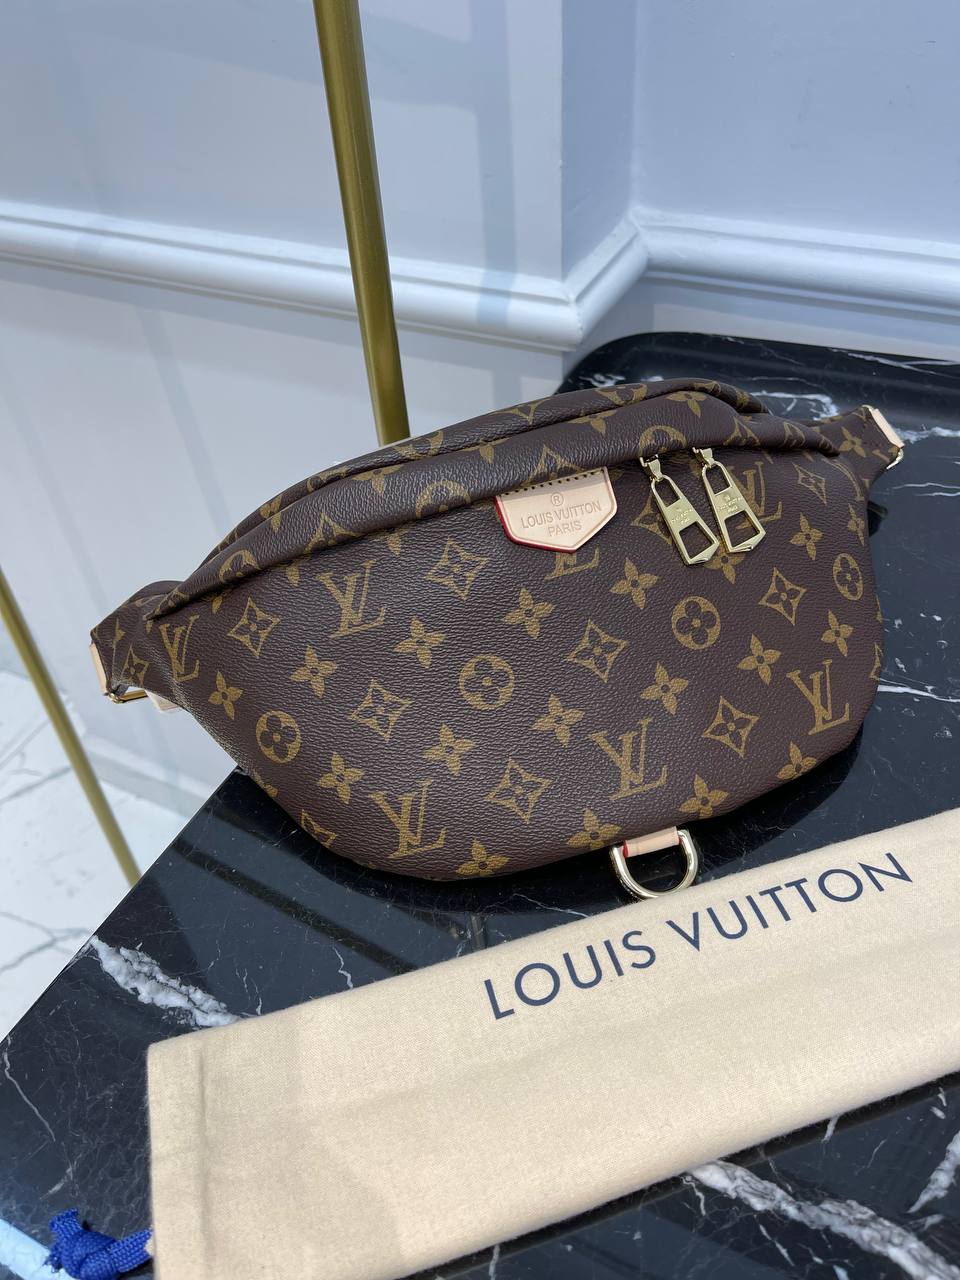 VERKAUFT - Louis Vuitton Bumbag M44575 Monogram Giant Rot * Tasche  Schultertasche Bauchtasche * mit Beleg von 2019 * wie NEU